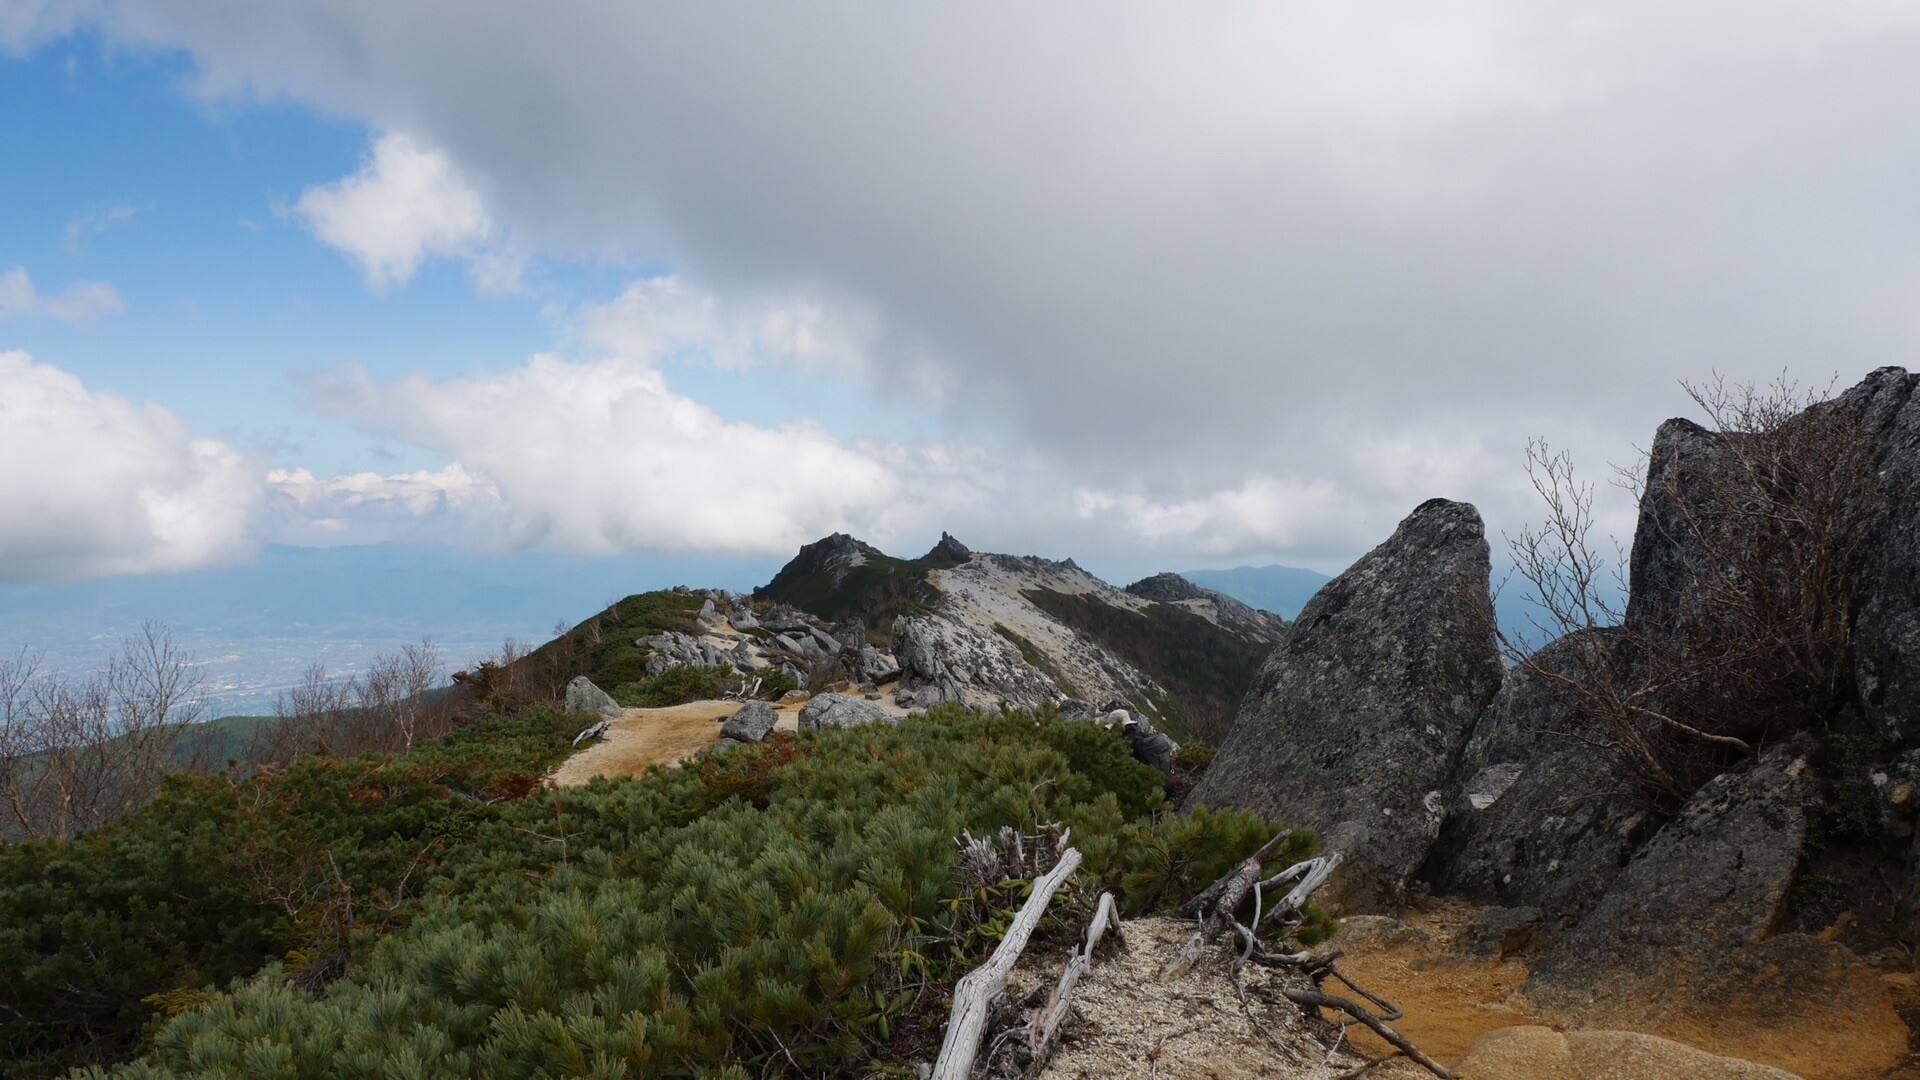 2022年6月4日 鳳凰三山 / 鳳凰山・地蔵岳・観音岳・薬師岳の写真22枚目 